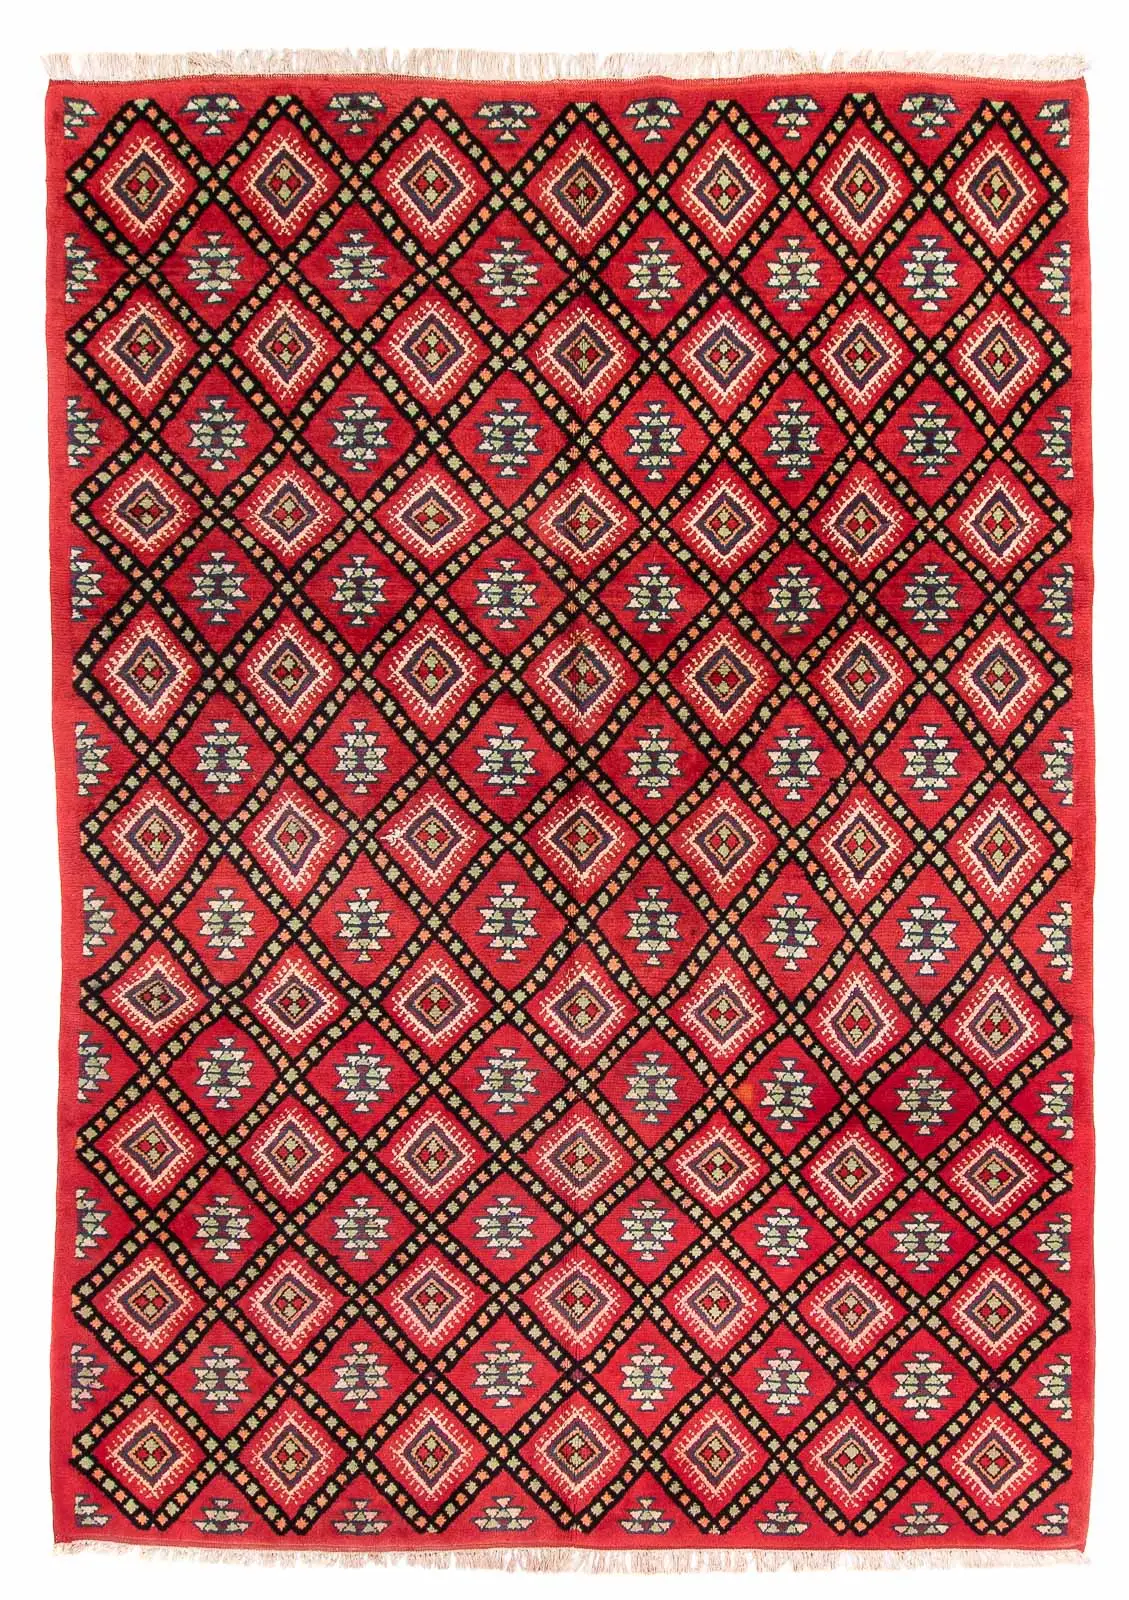 Berber Teppich - 281 x 198 cm - rot